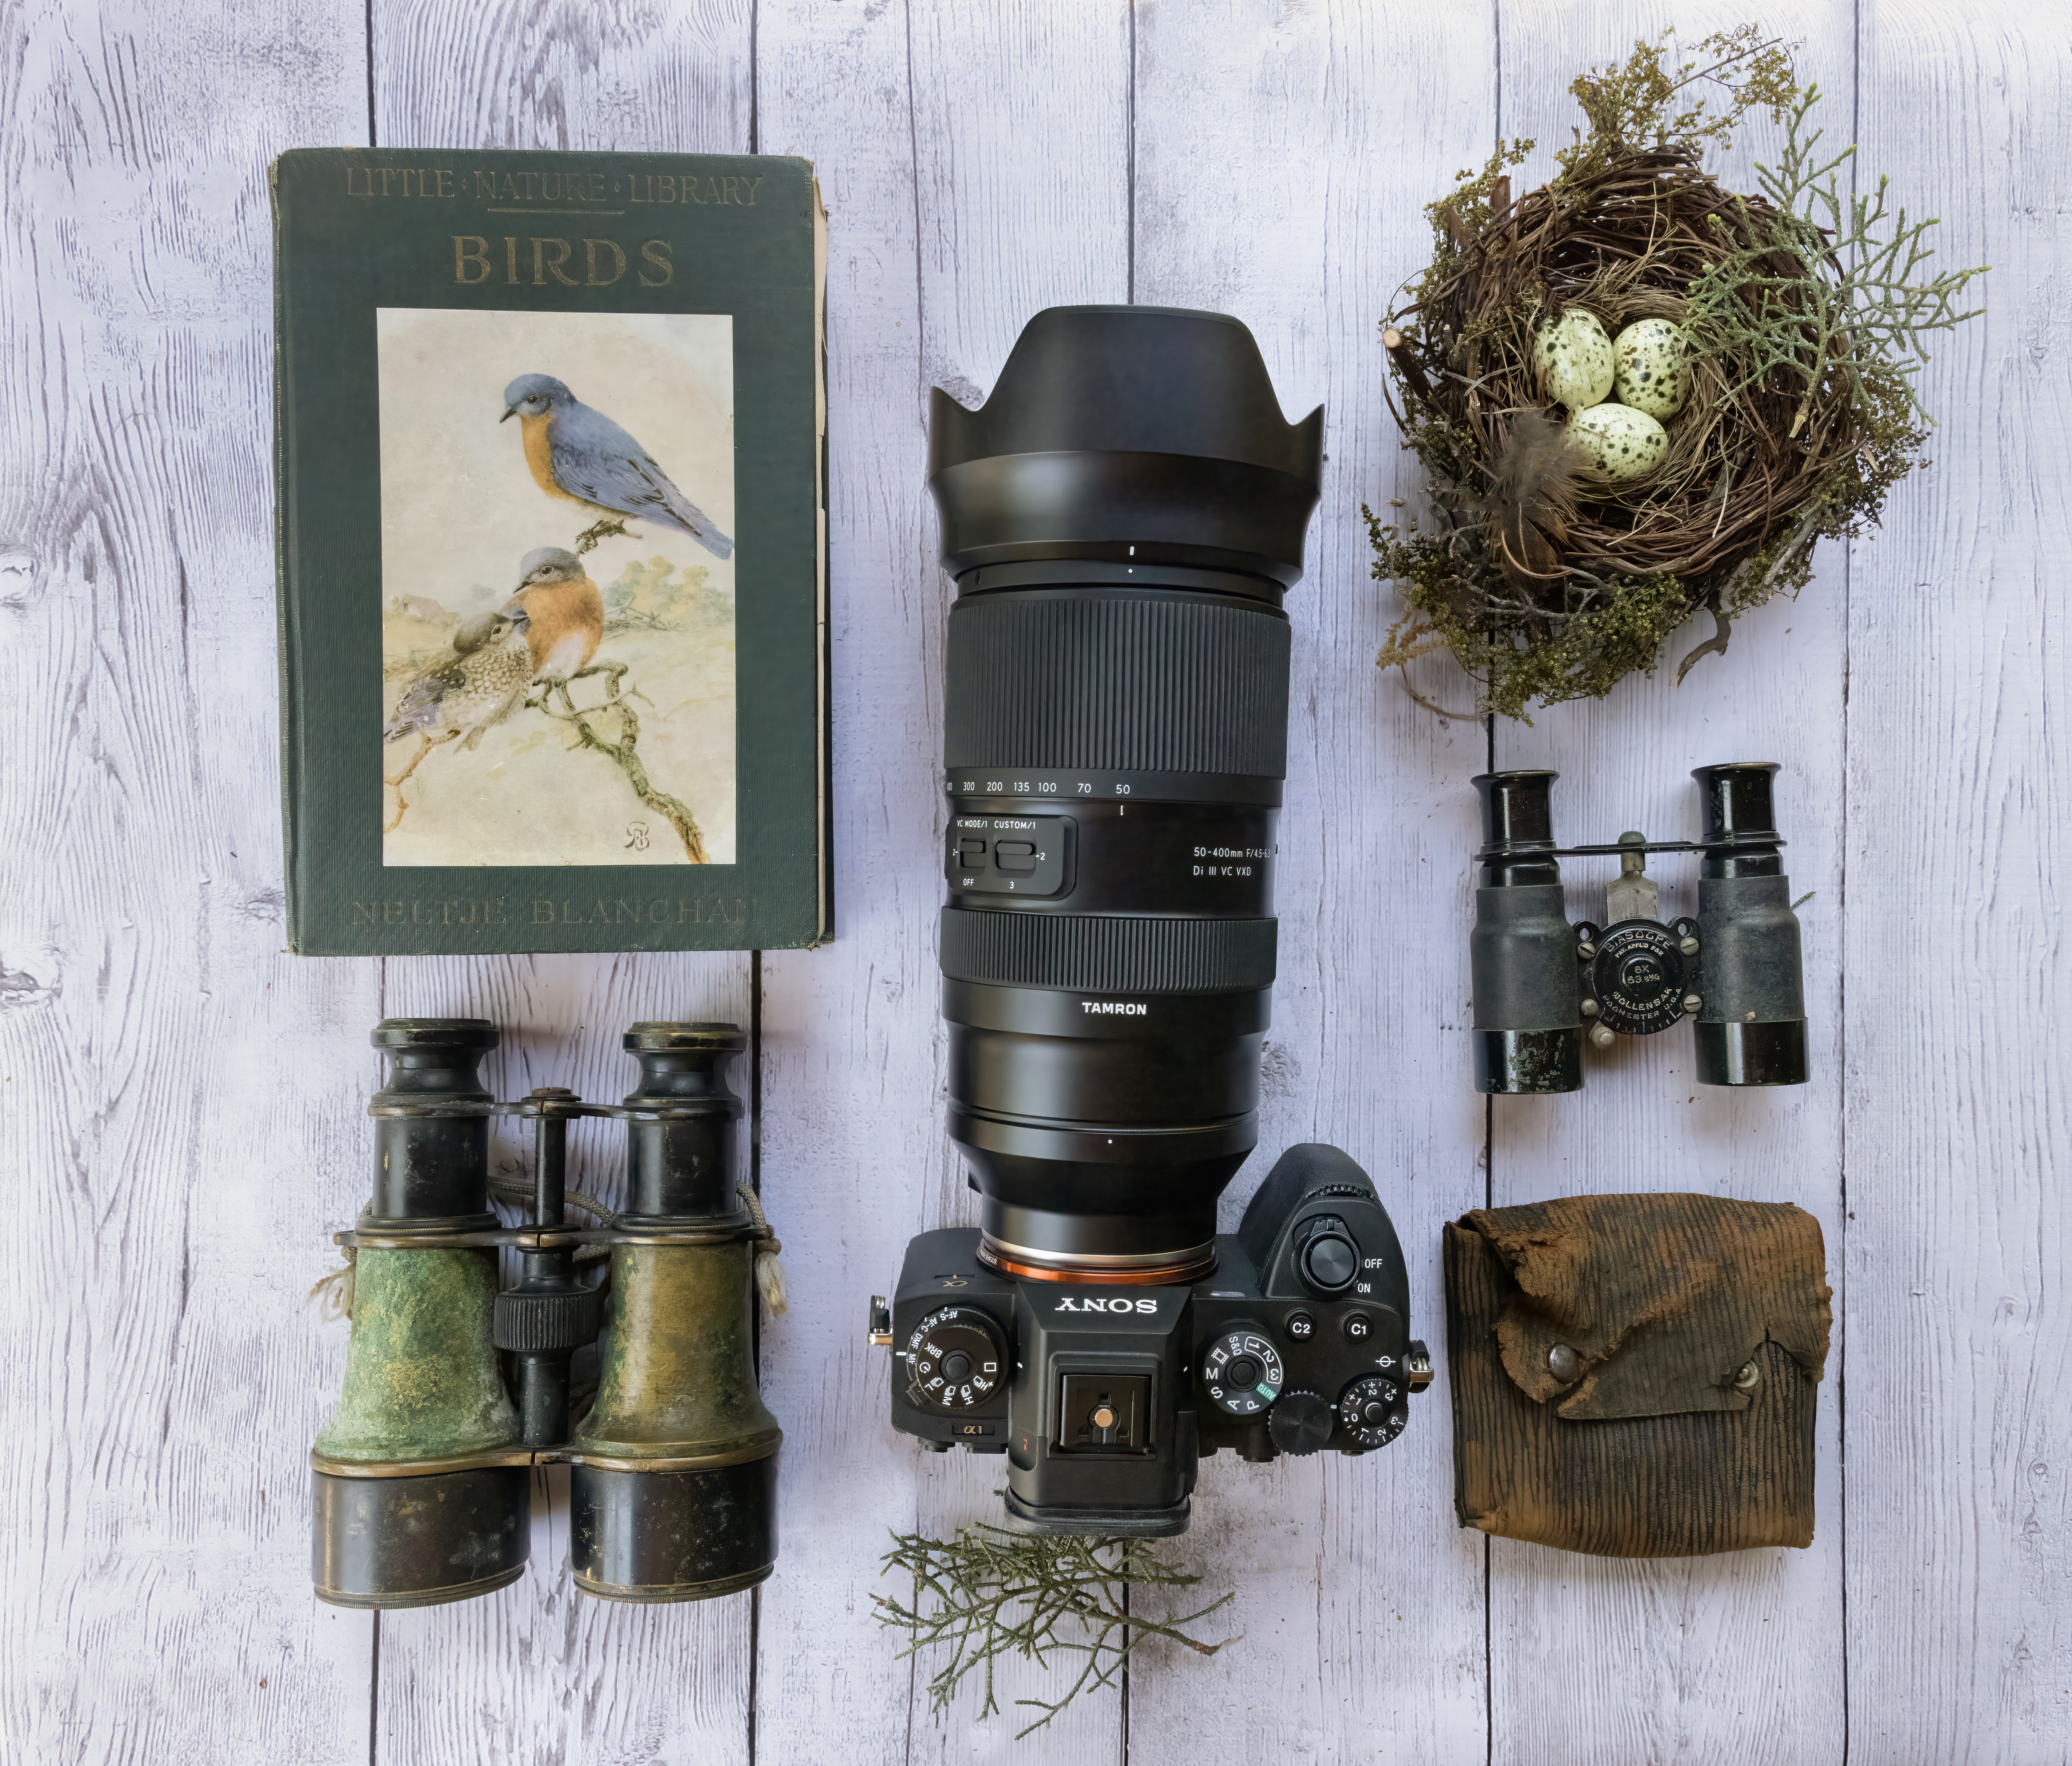 Objektiv Tamron s fotoaparátem a vybavením na pozorování ptactva